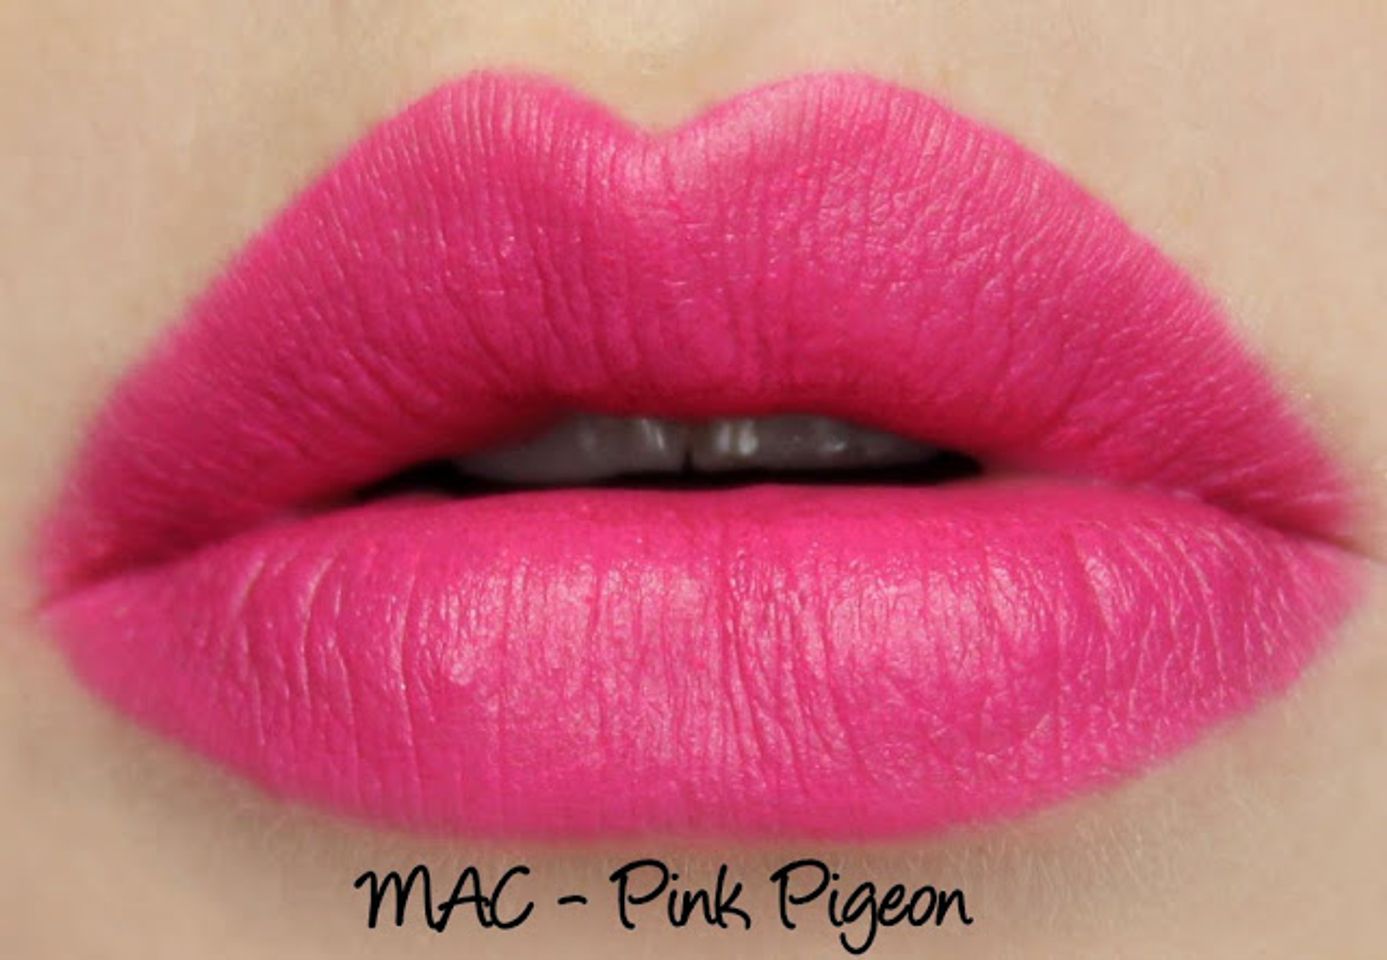 Son Mac Pink Pigeon màu hồng tươi sáng 3